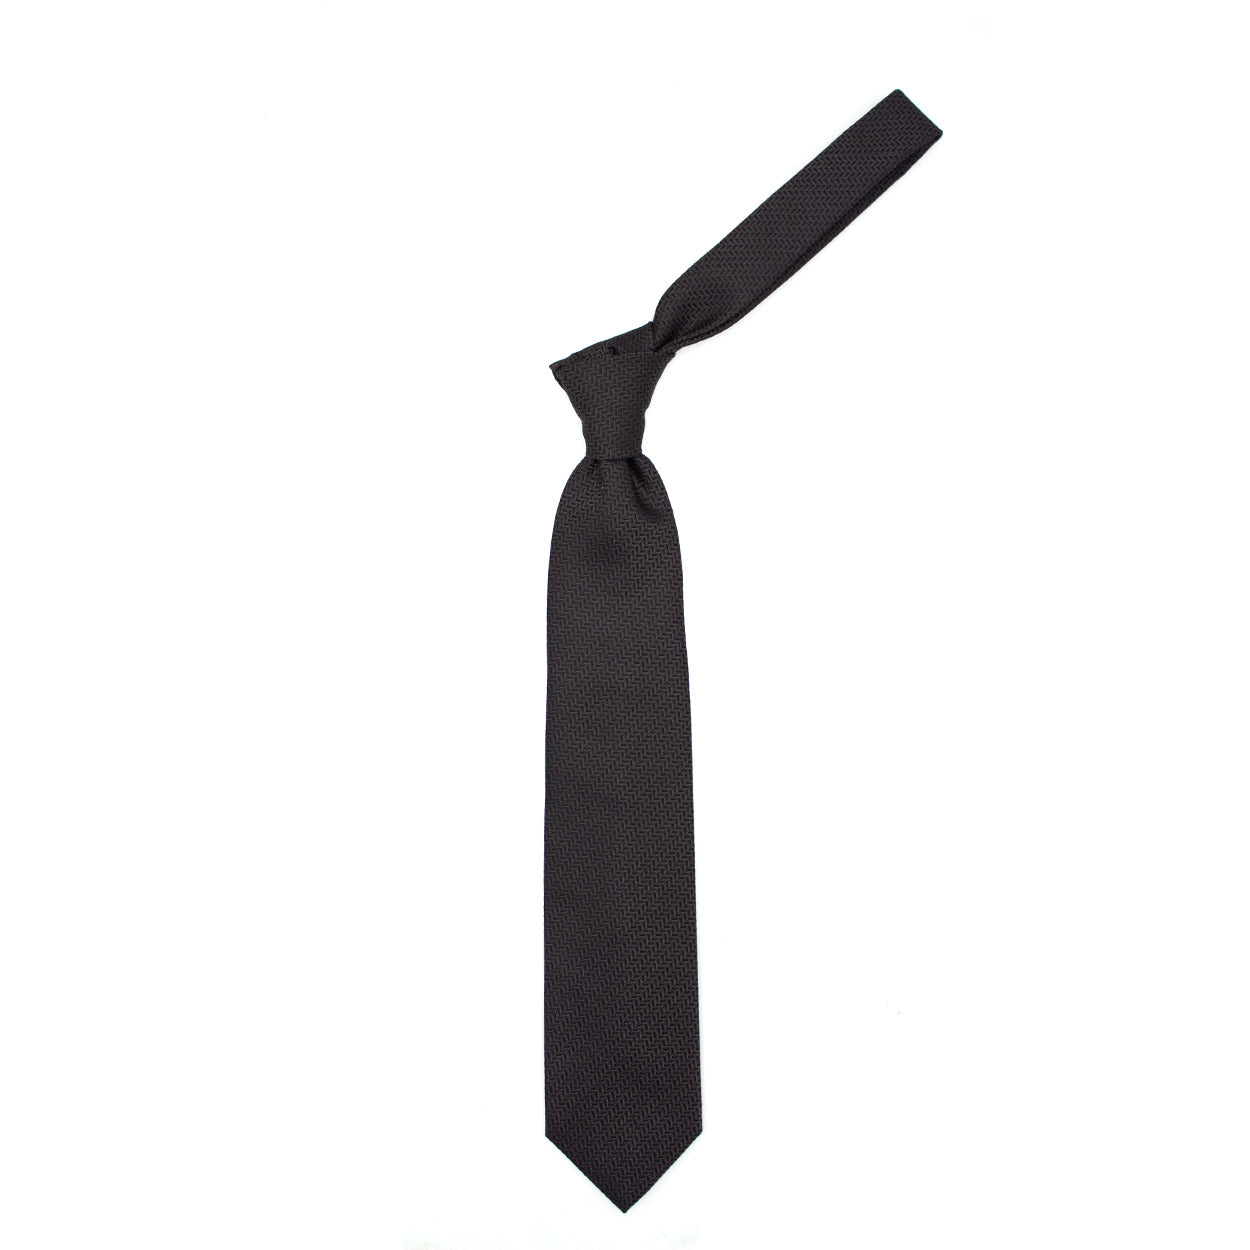 Cravatta marrone tramata tono su tono